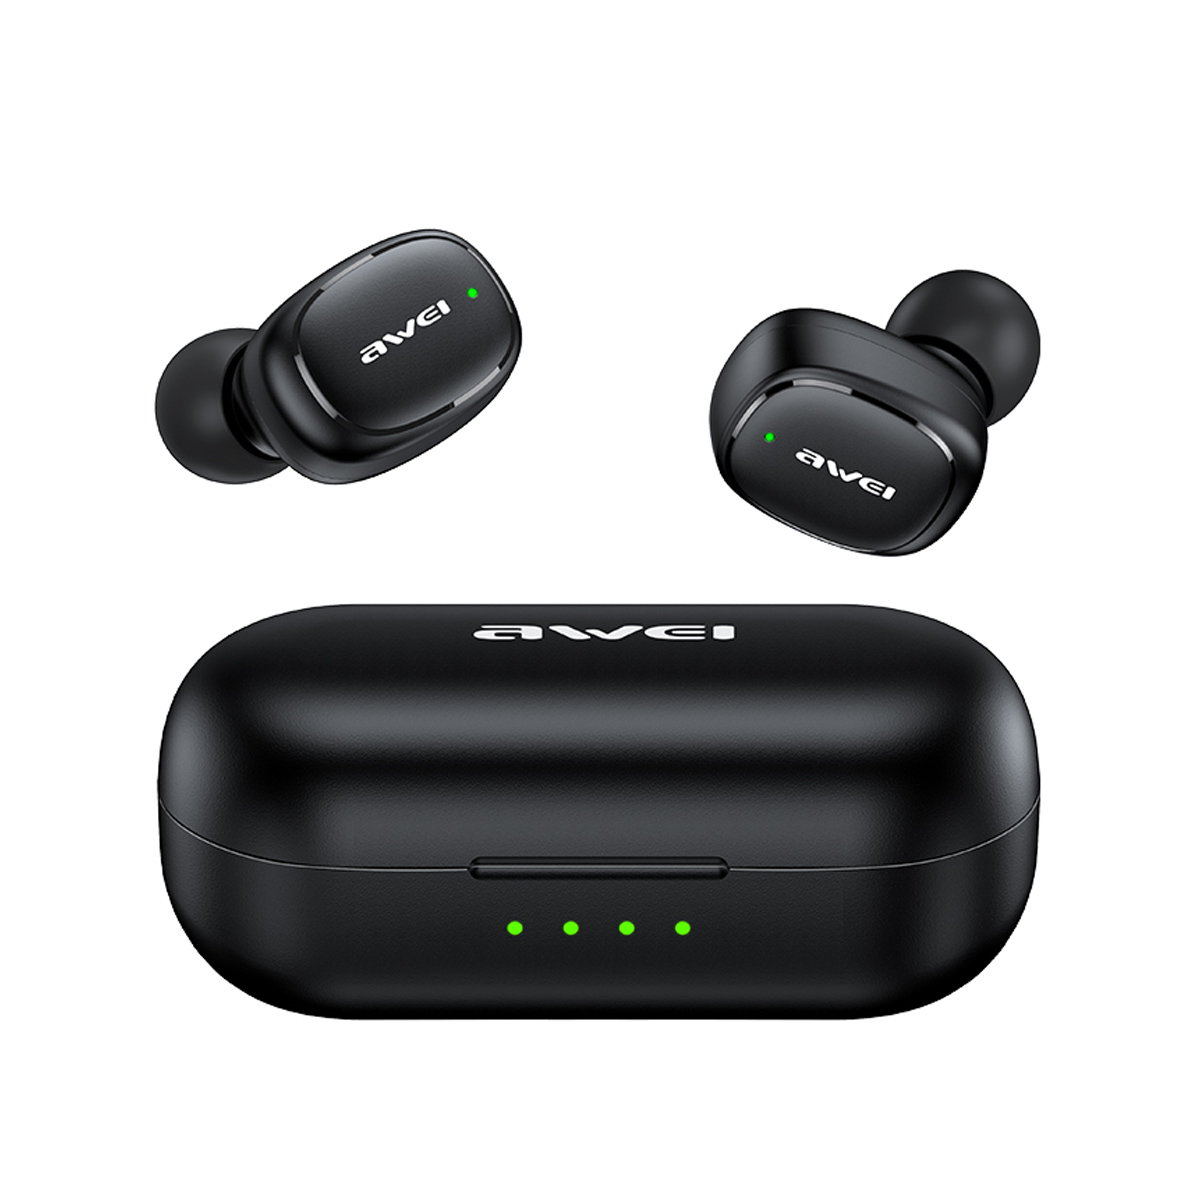 Audifonos Awei T13 Pro TWS In Ear Bluetooth Negro